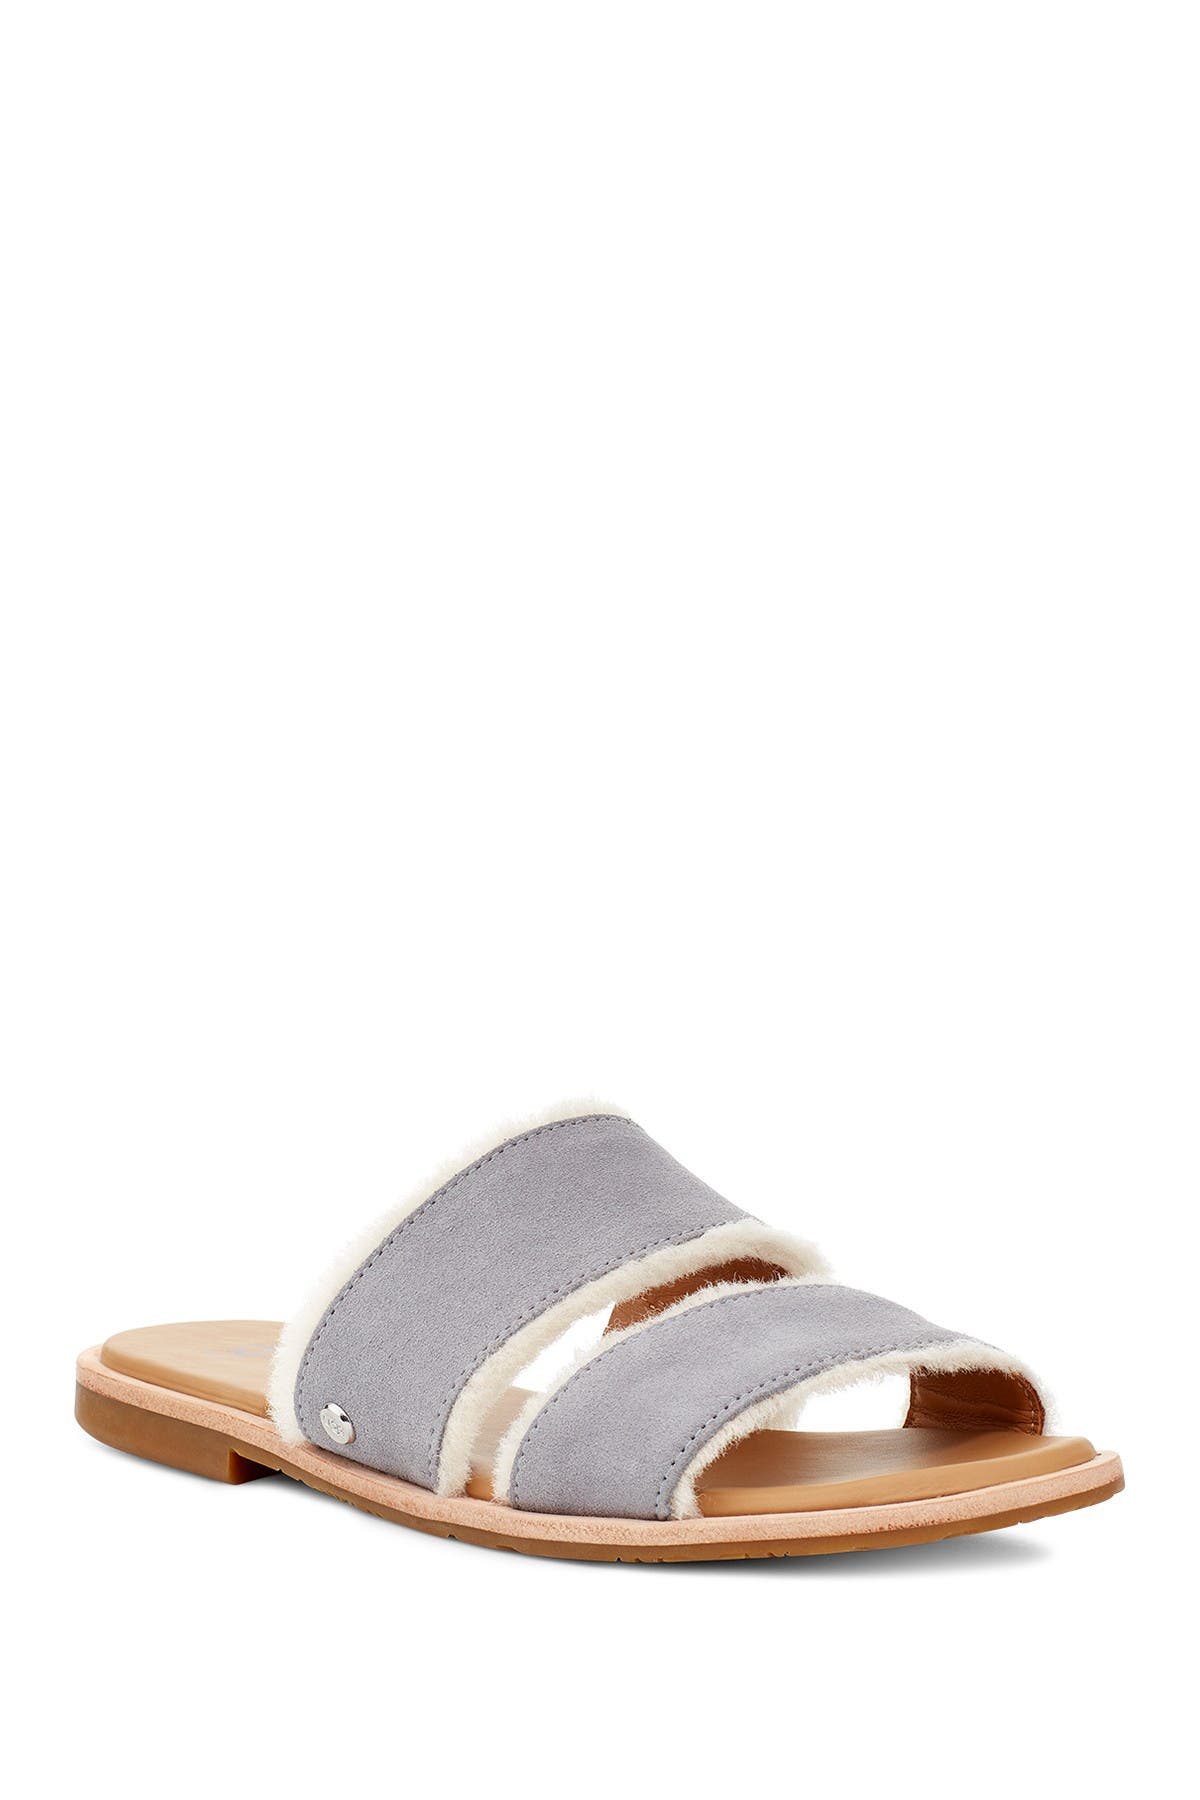 ugg shearling slide sandals